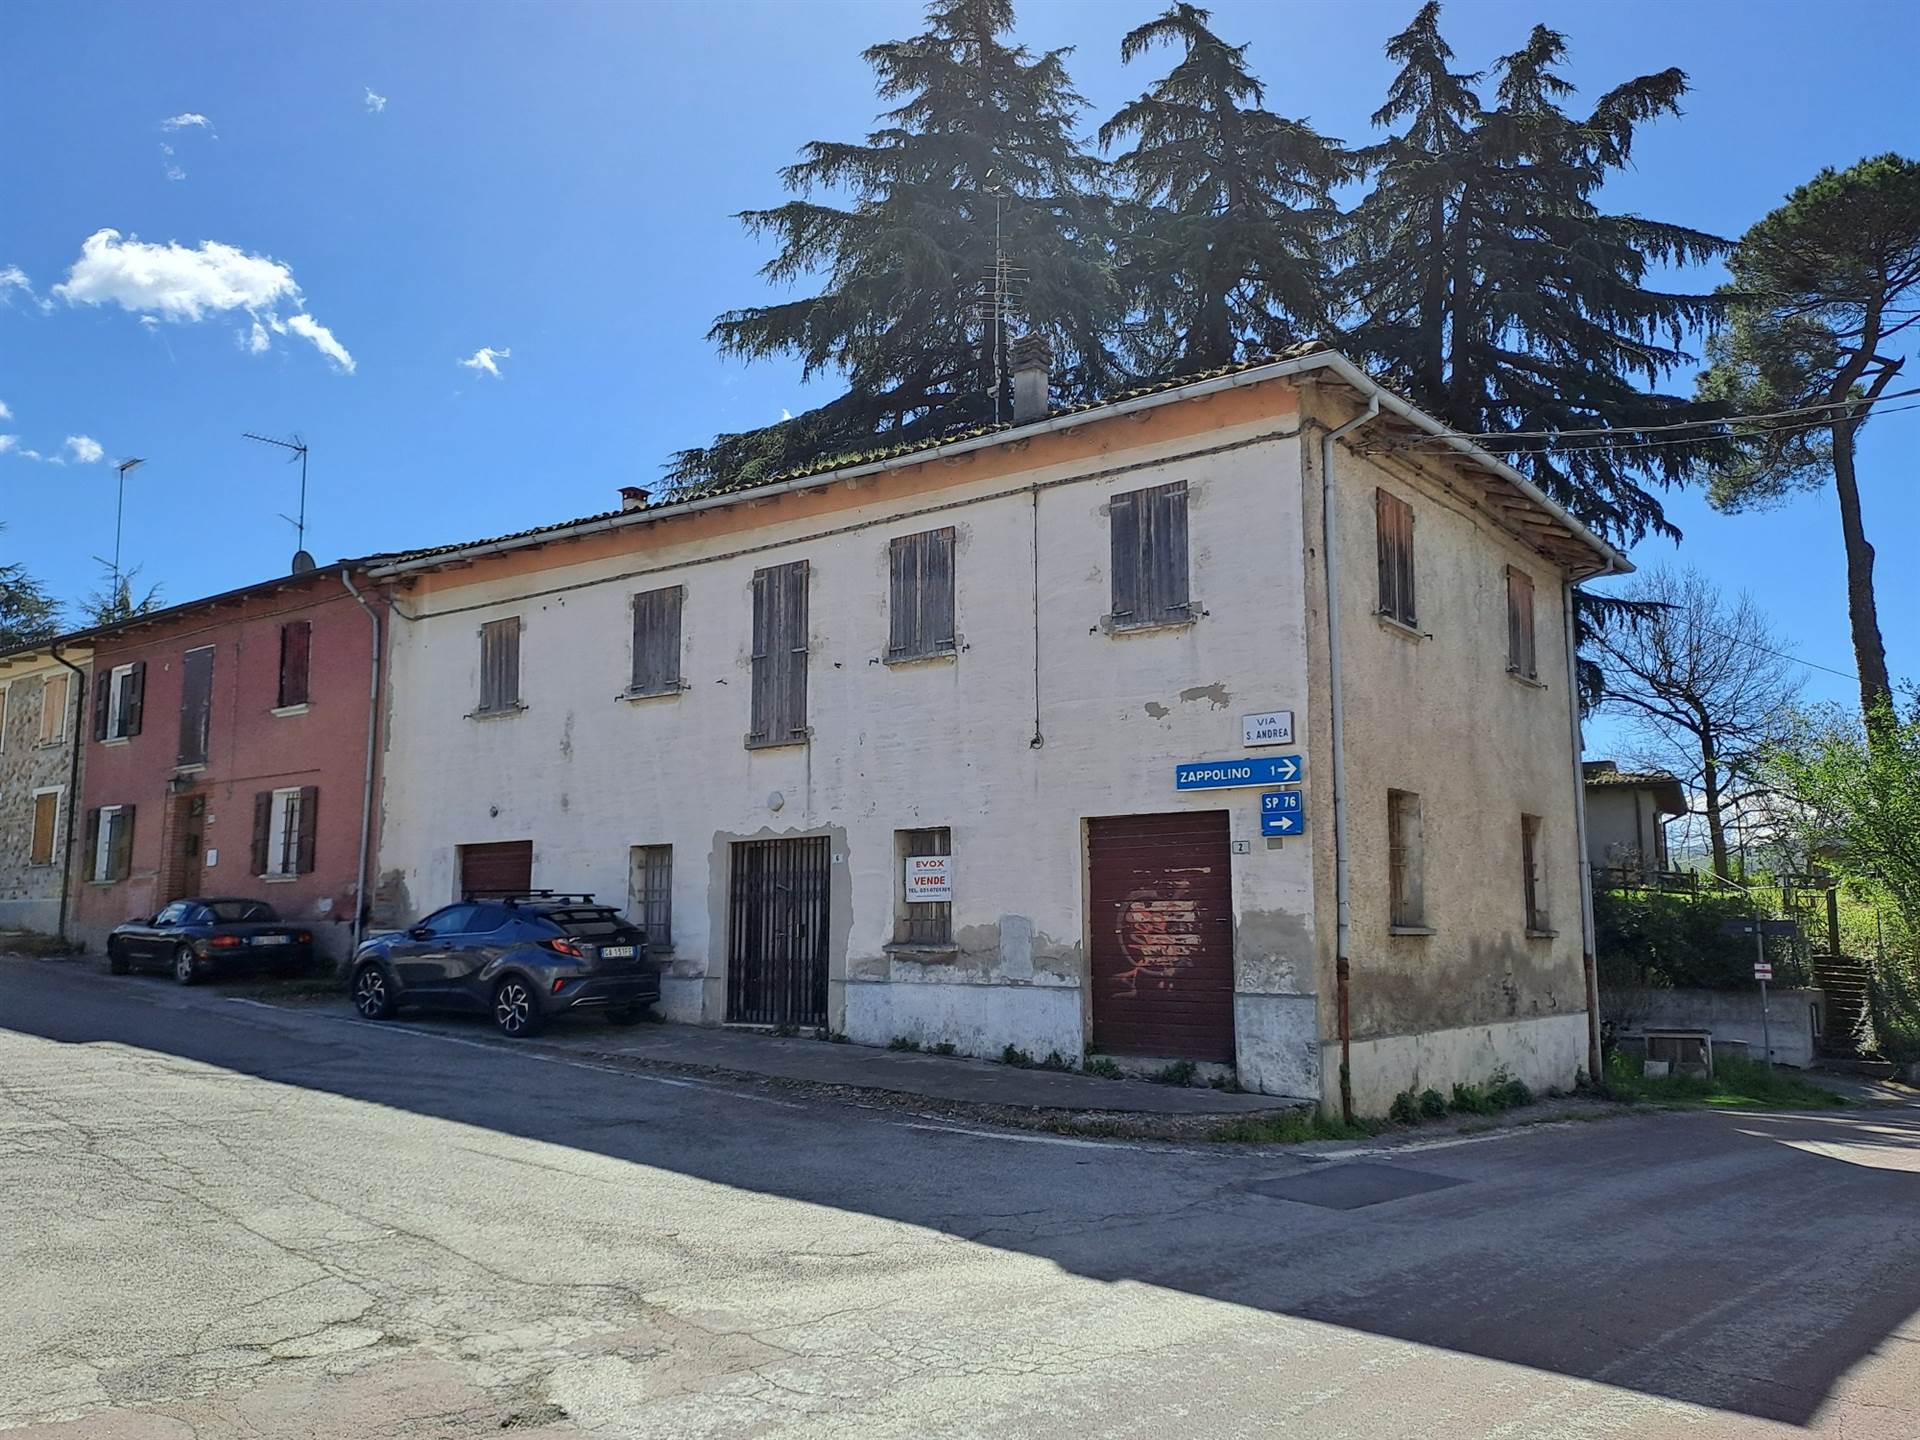 Soluzione Indipendente in vendita a Valsamoggia, 8 locali, zona Località: FAGNANO, prezzo € 70.000 | PortaleAgenzieImmobiliari.it